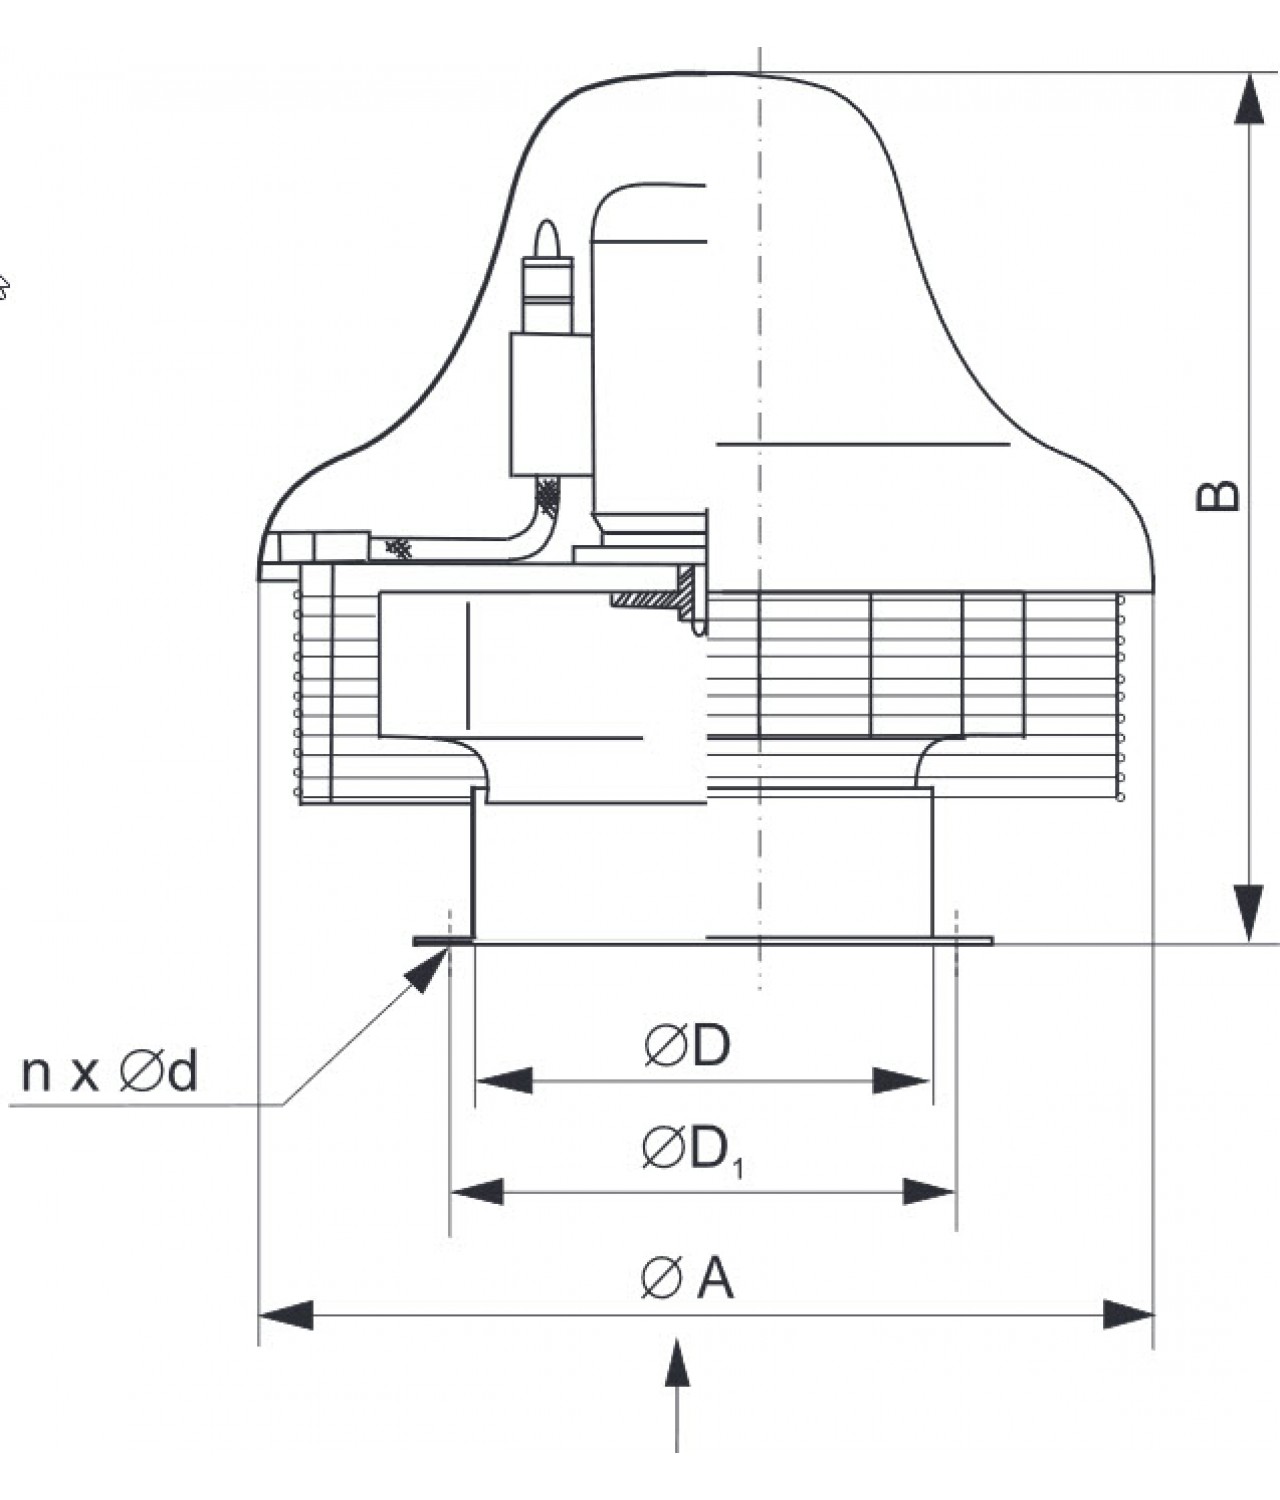 Explosion proof roof fans SVWDB EX ≤7000 m³/h - drawing